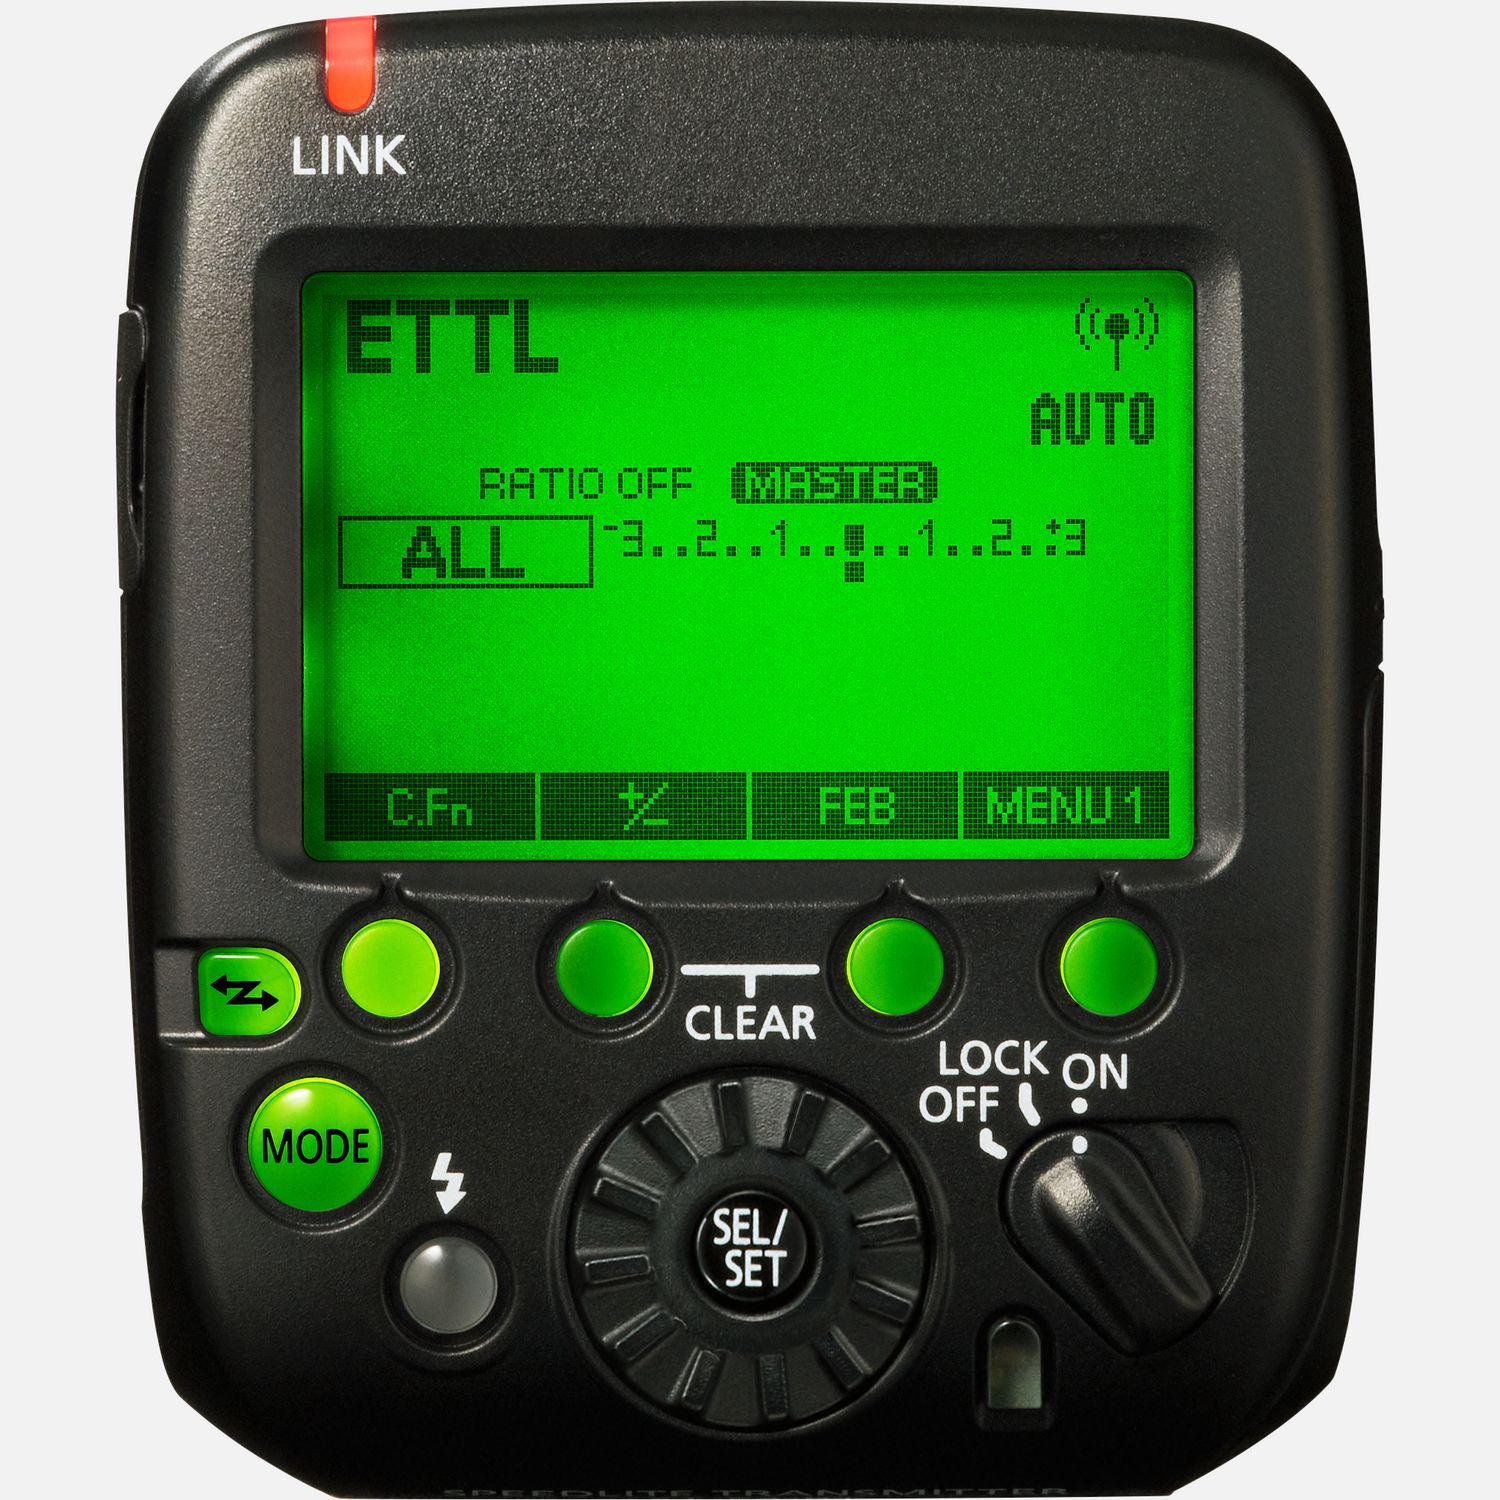 Lst kompatible Blitzgerte aus einer Entfernung von bis zu 30 Metern aus. Kontrolle ber Funkfrequenz ermglicht das sichere Bedienen auch wenn kein direkter Sichtkontakt besteht.  Vorteile      Blitz-Fernauslser auf Funkfrequenz          Staub- und Feuchtigkeitsschutz          Kamera-Fernauslser          Kontrolliert bis zu 15 Blitzgerte          Bestandteil des E-TTL II Blitzsystems          Lst ausgewhlte Speedlites aus bis zu 30 m aus              Kompatibilitt       EOS 40D*         EOS 5DS         EOS M6*         EOS-1D Mark II*         EOS 350D*         EOS 5D Mark II*         EOS 760D*         EOS M5*         EOS-1D Mark IV*         EOS 1200D*         EOS 300D*         EOS 5D Mark III         EOS 600D*         EOS 77D         EOS 7D*         EOS 7D II         EOS 80D         EOS D60*         EOS 4000D*         EOS-1D Mark III*         EOS-1Ds Mark III*         EOS 100D*         EOS 1100D*         EOS 200D         EOS 450D*         EOS 60D*         EOS 700D*         EOS 750D*         EOS-1D X         EOS-1Ds Mark II*         EOS M50*         EOS 30D*         EOS 500D*         EOS 650D         EOS-1D X Mark II         EOS-1D C         EOS 20D*         EOS 400D*         EOS 50D*         EOS 550D         EOS 5DS R         EOS M2*         EOS M3*         EOS R         EOS 250D         EOS 1300D*         EOS 60Da*         EOS 6D*         EOS 6D Mark II         EOS M*         EOS 2000D*         EOS 5D Mark IV         EOS D30*         EOS 70D         EOS 800D*         EOS 10D*         EOS M10*         EOS 5D*         PowerShot G5 X         PowerShot G3 X         PowerShot G1 X Mark III         EOS RP         EOS 90D         EOS M6 Mark II         EOS Ra         EOS-1D X Mark III         EOS 850D         EOS R5         EOS R6         EOS M50 Mark II